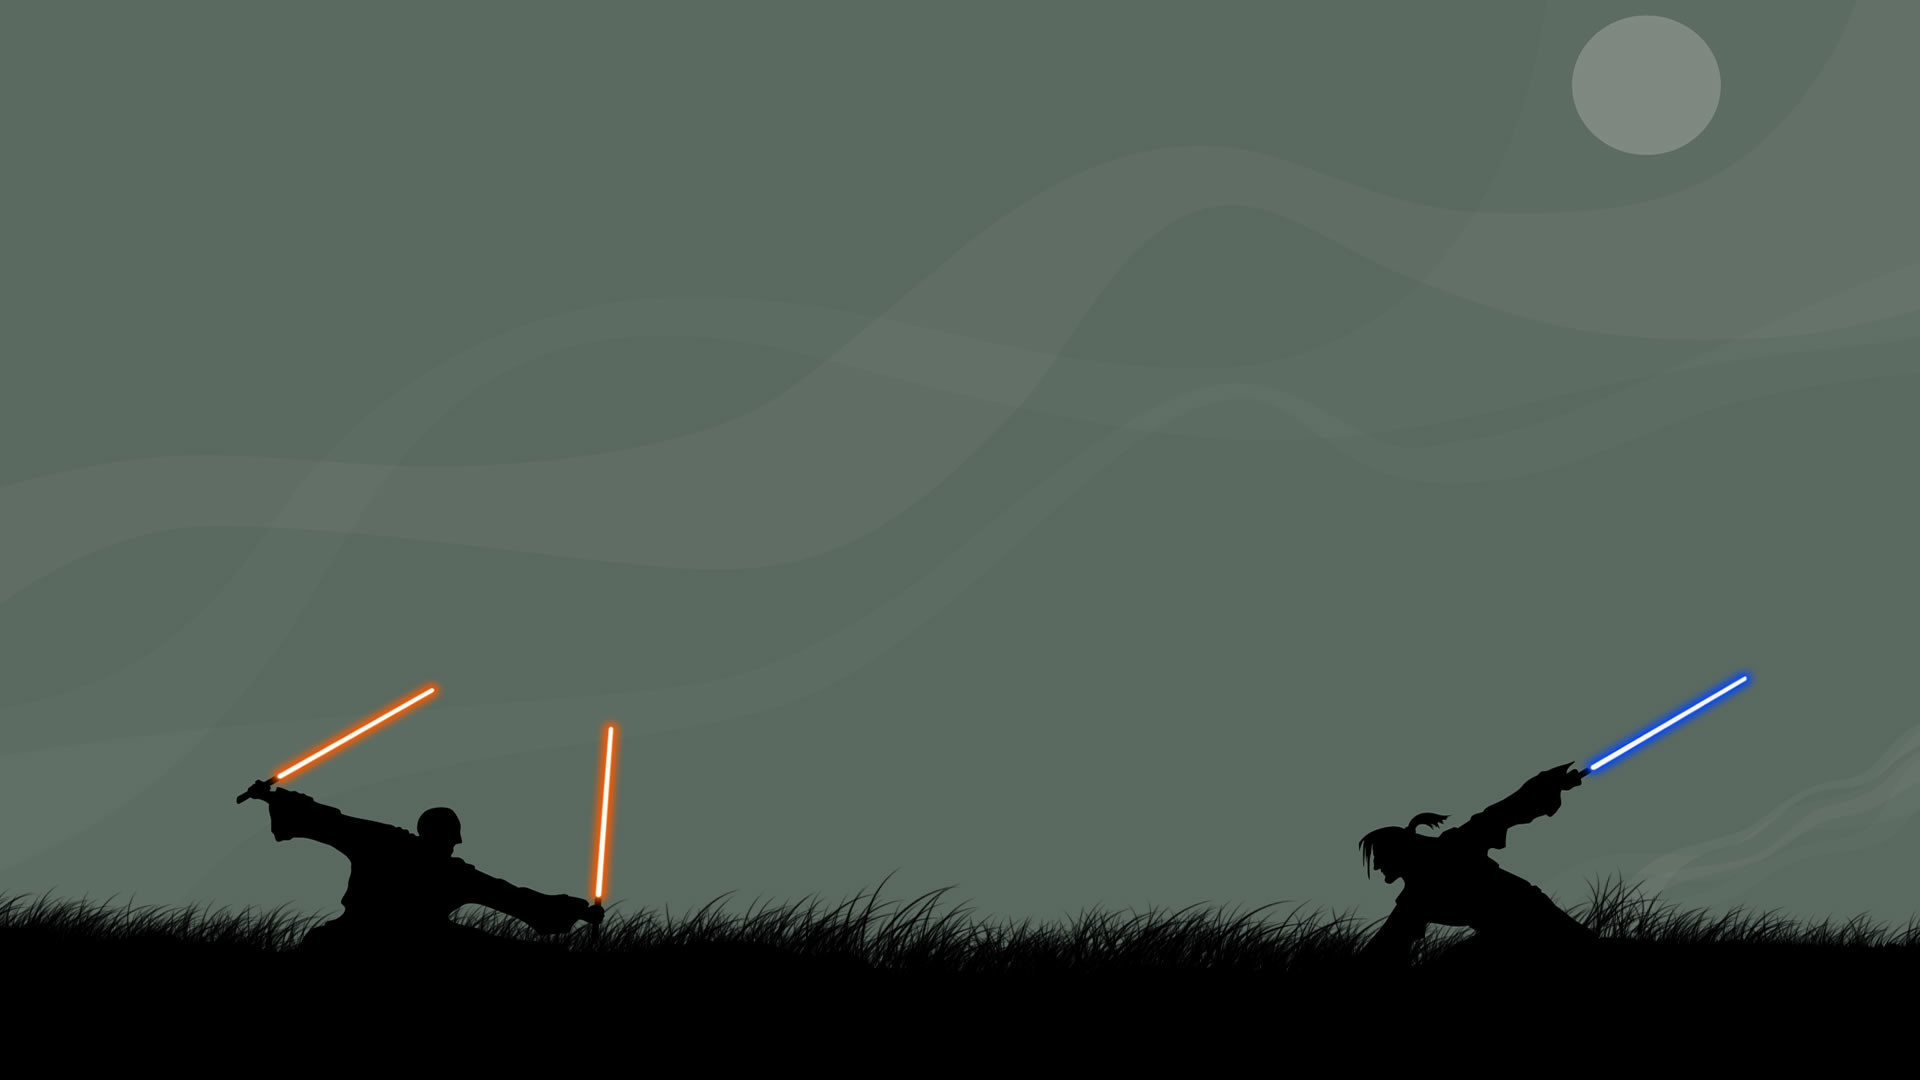 Star Wars Lightsaber Duel Wallpaper (64+ images)